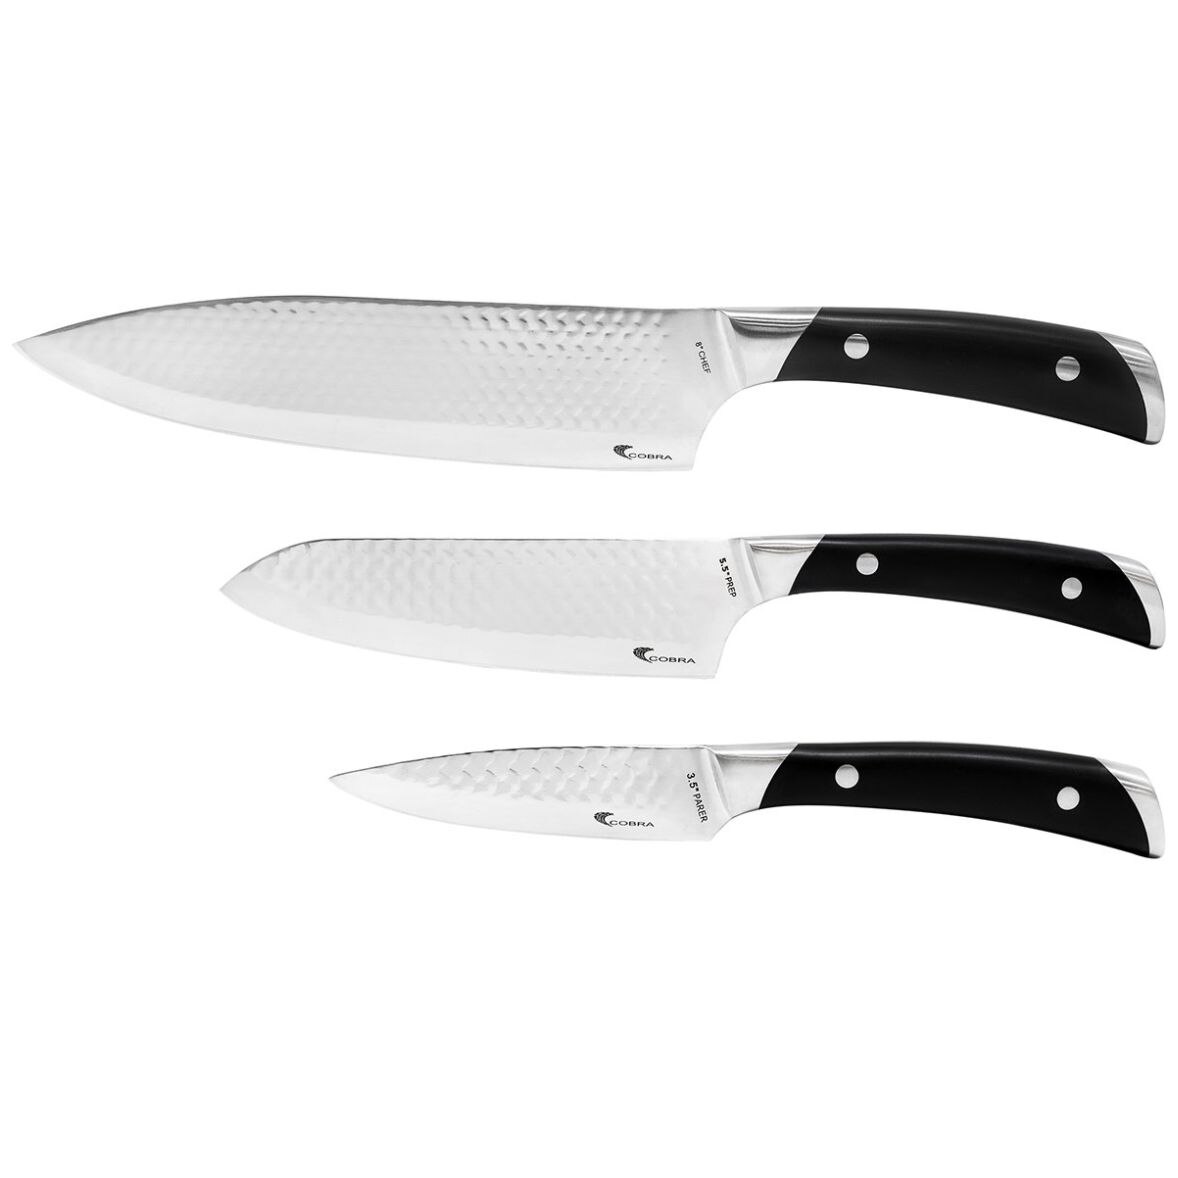 Juego de cuchillos Victorinox Swiss Army Chef Bundle, incluye